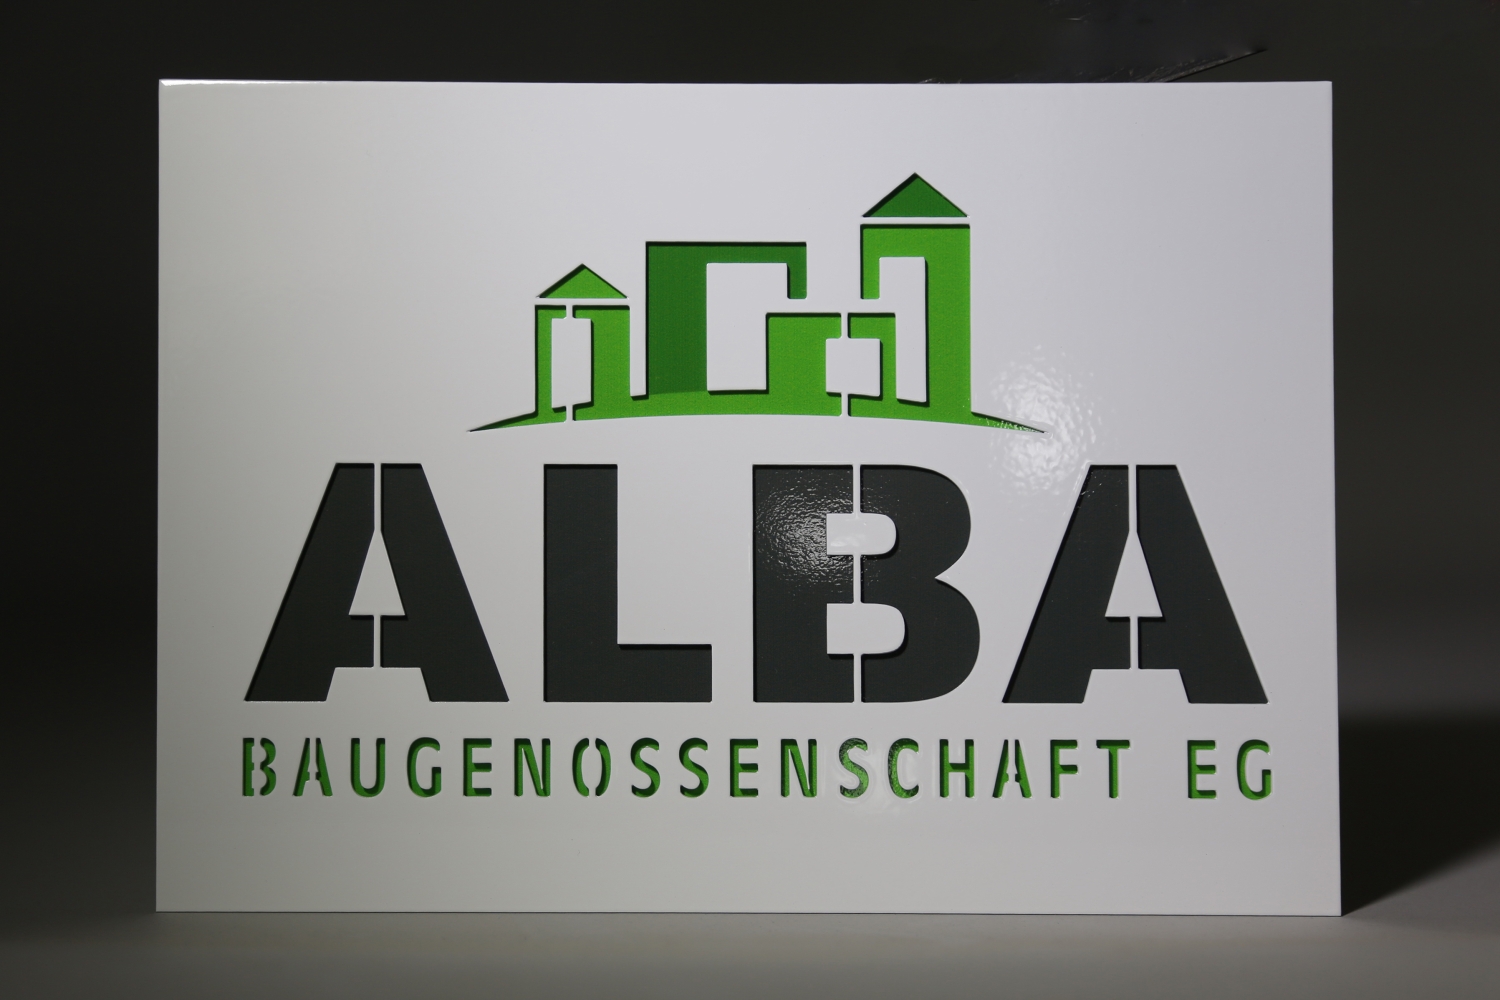 Firmenschilder "ALBA" aus Edelstahl